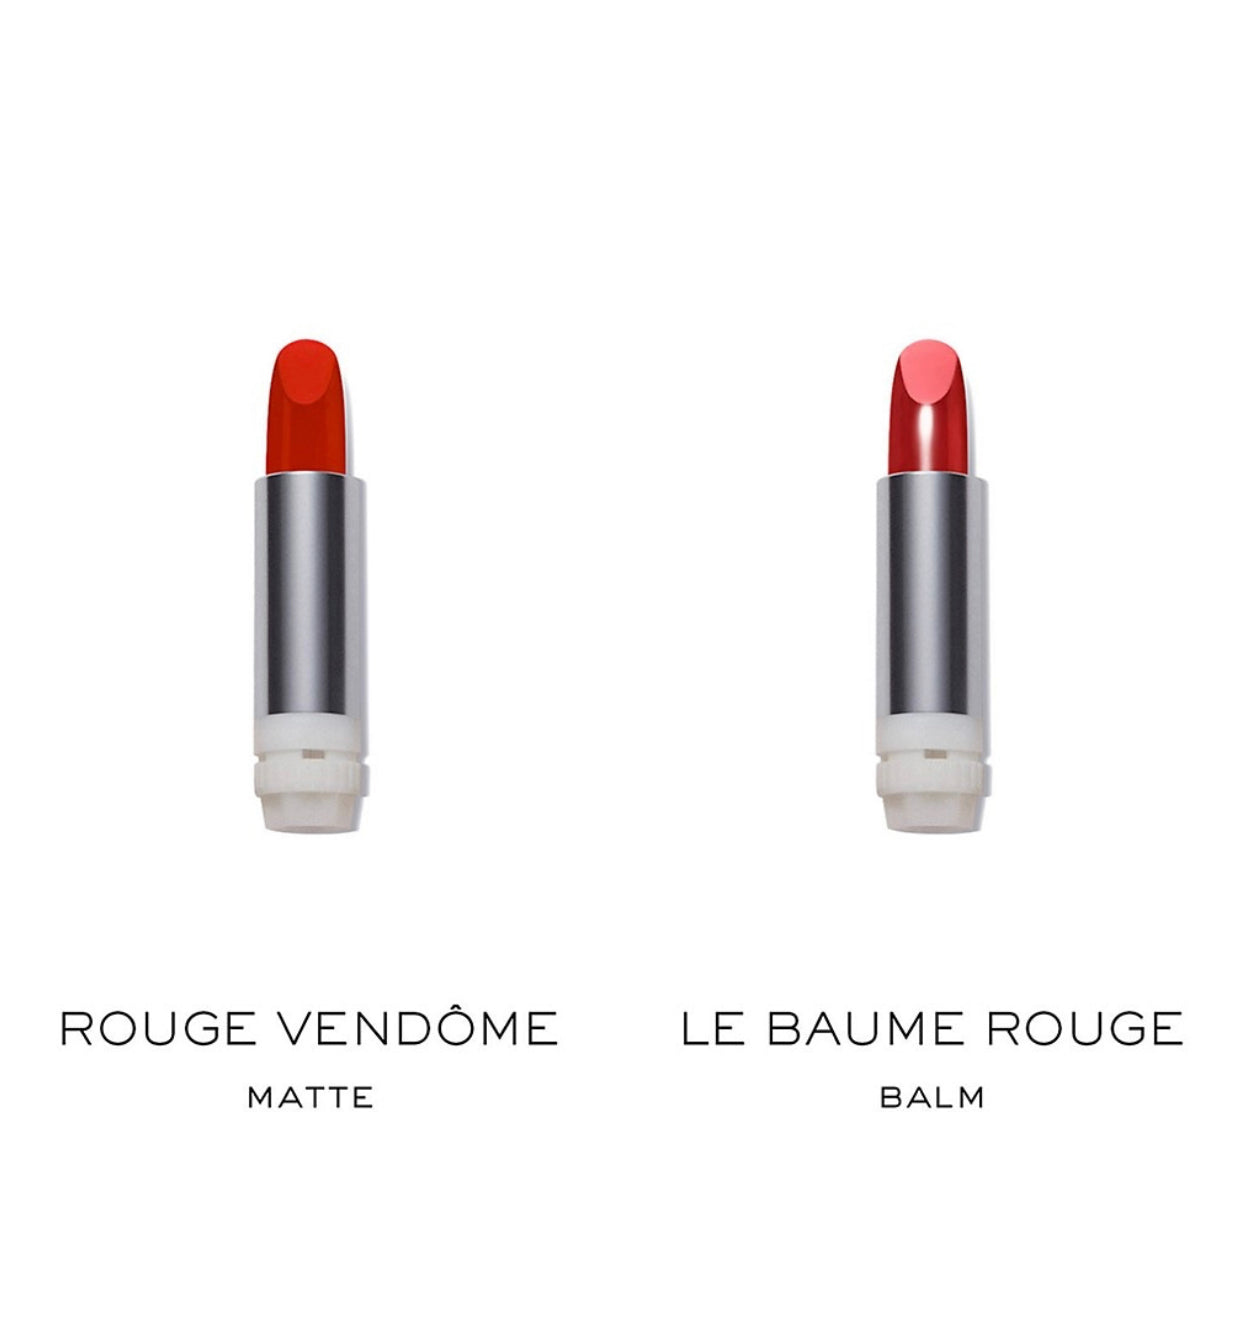 LA BOUCHE ROUGE, THE PARISIAN REDS 3 PIECE REFILLABLE LIPSTICK SET